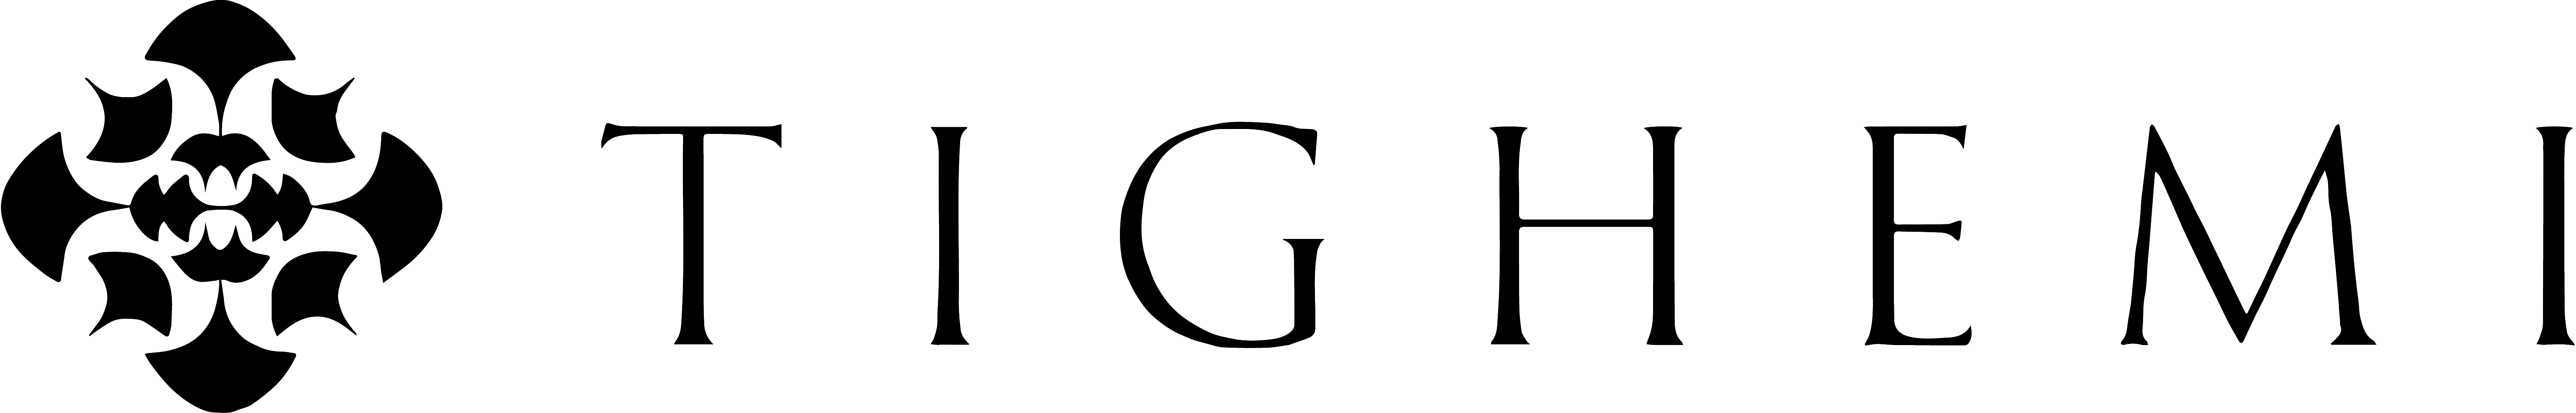 Tighemi Logo Black